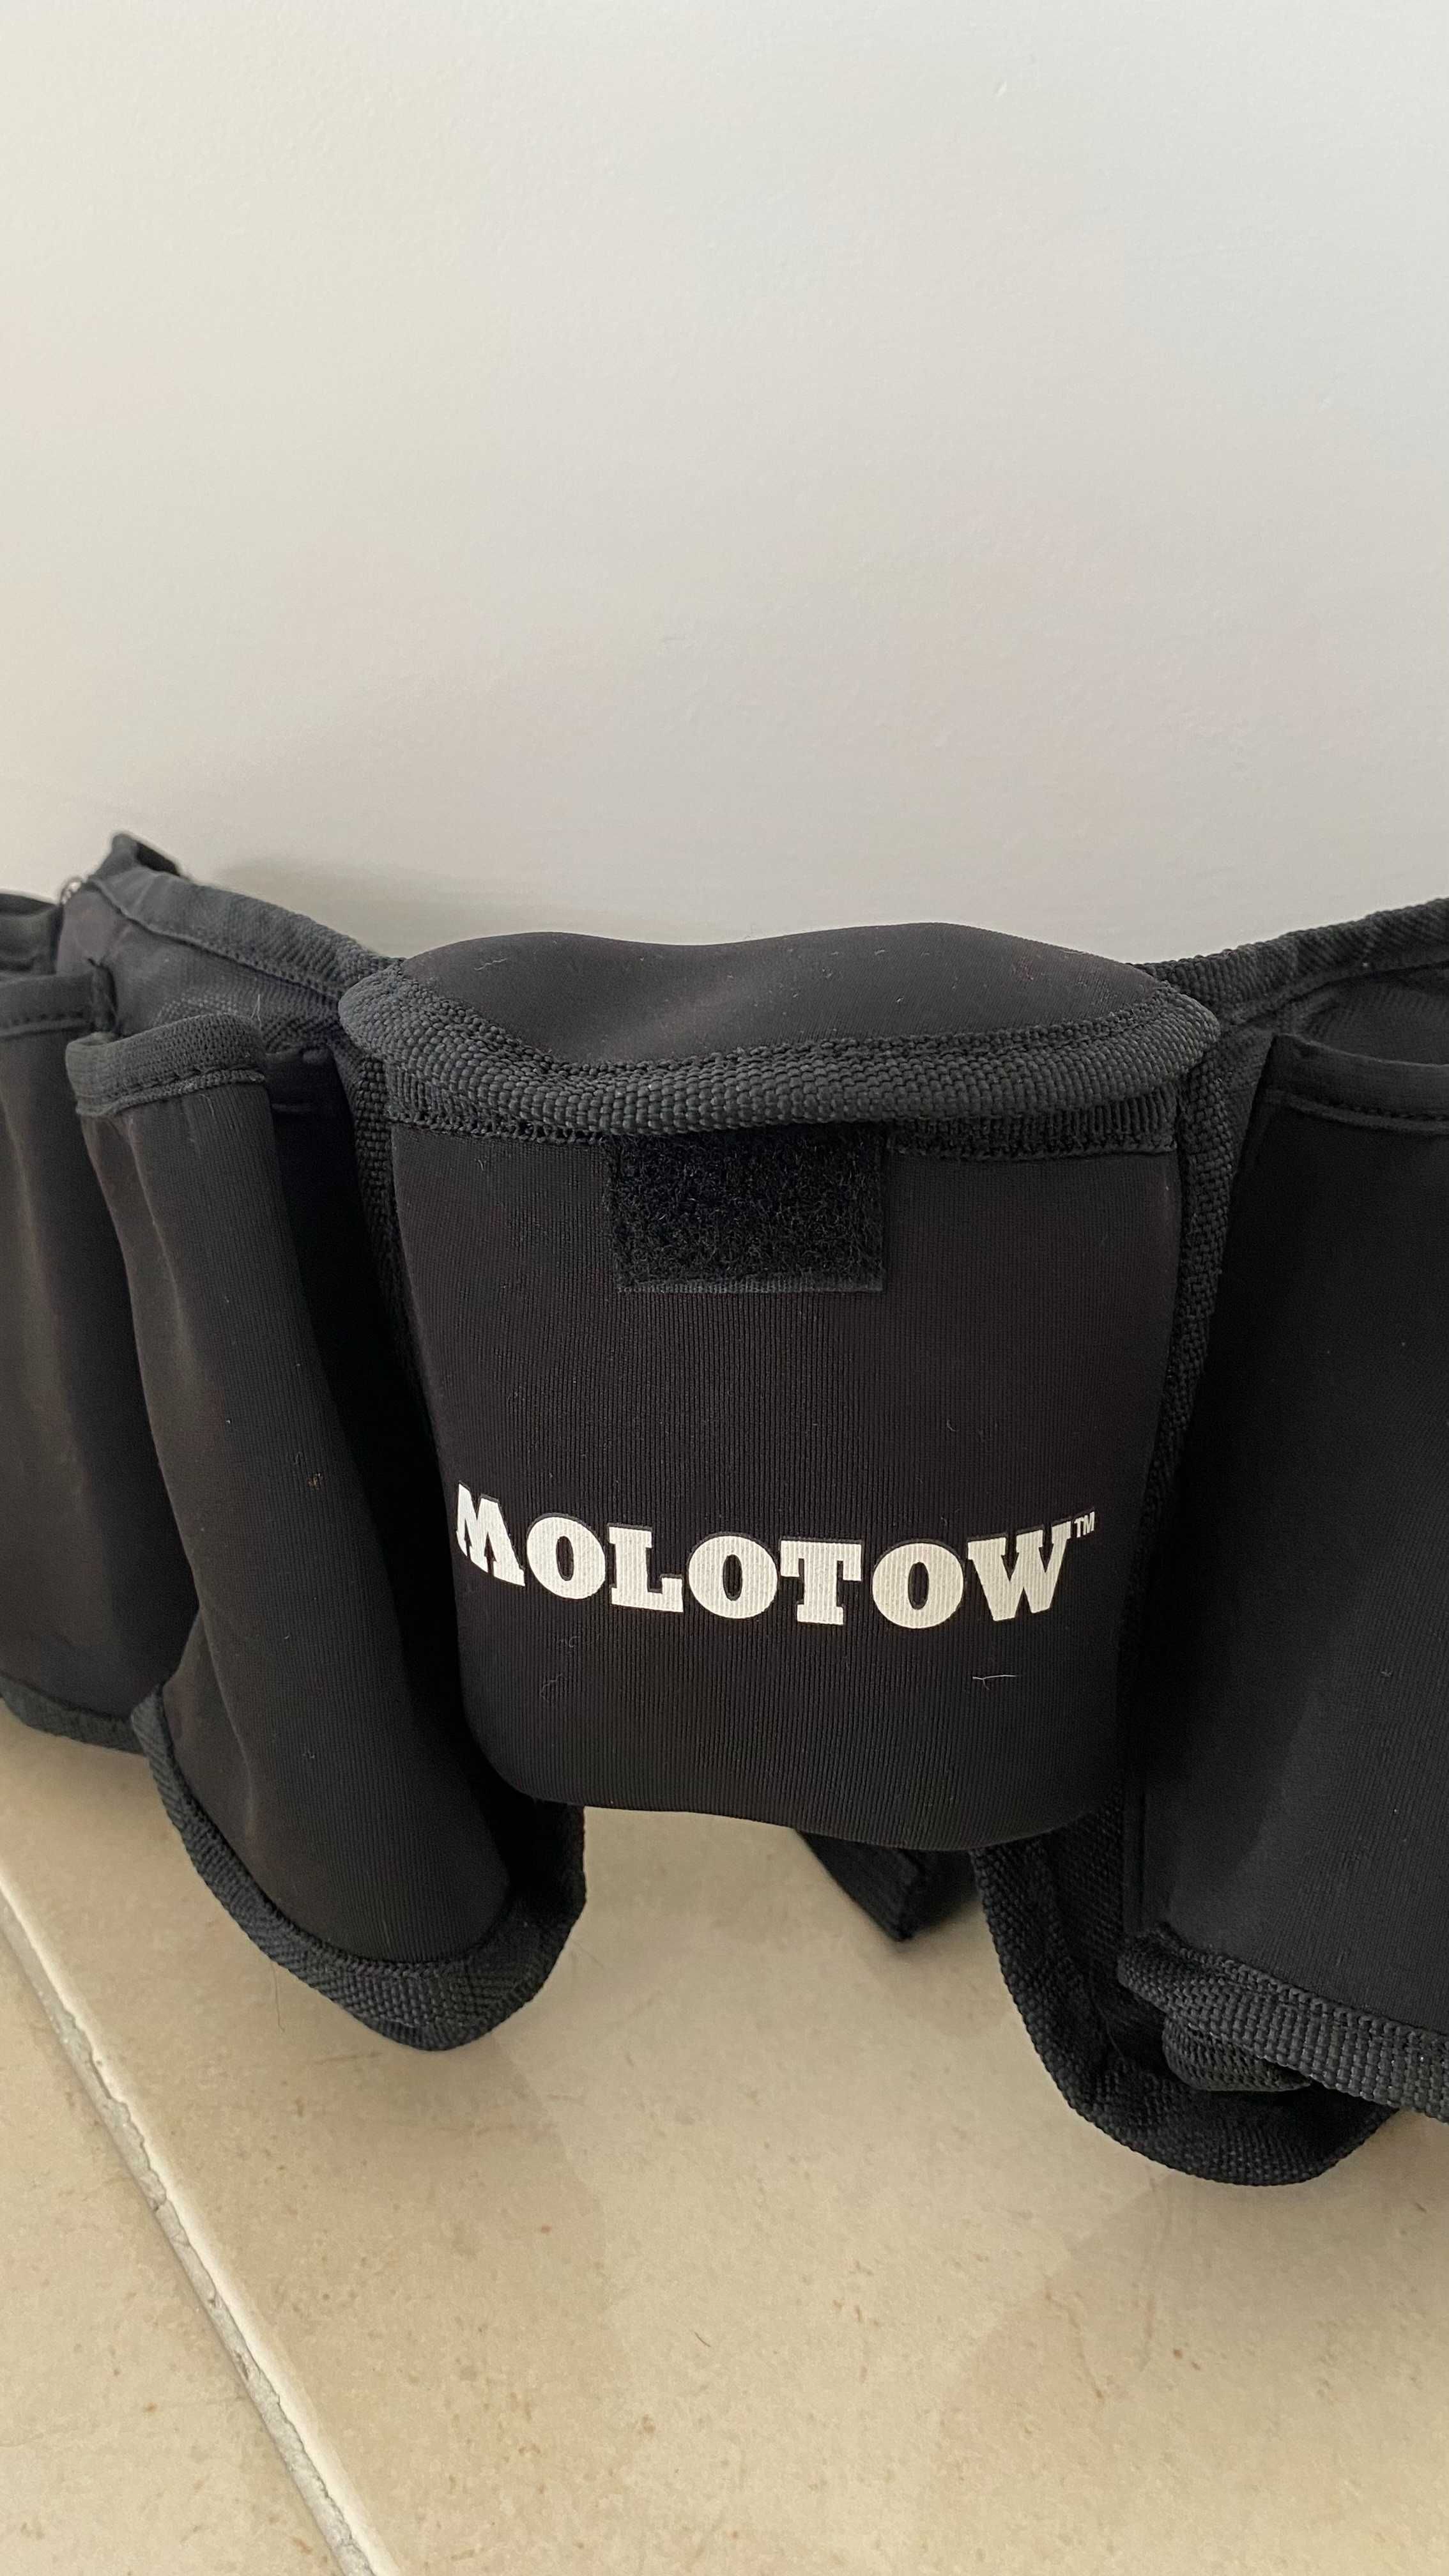 Molotow Can Belt - Cinto para Sprays